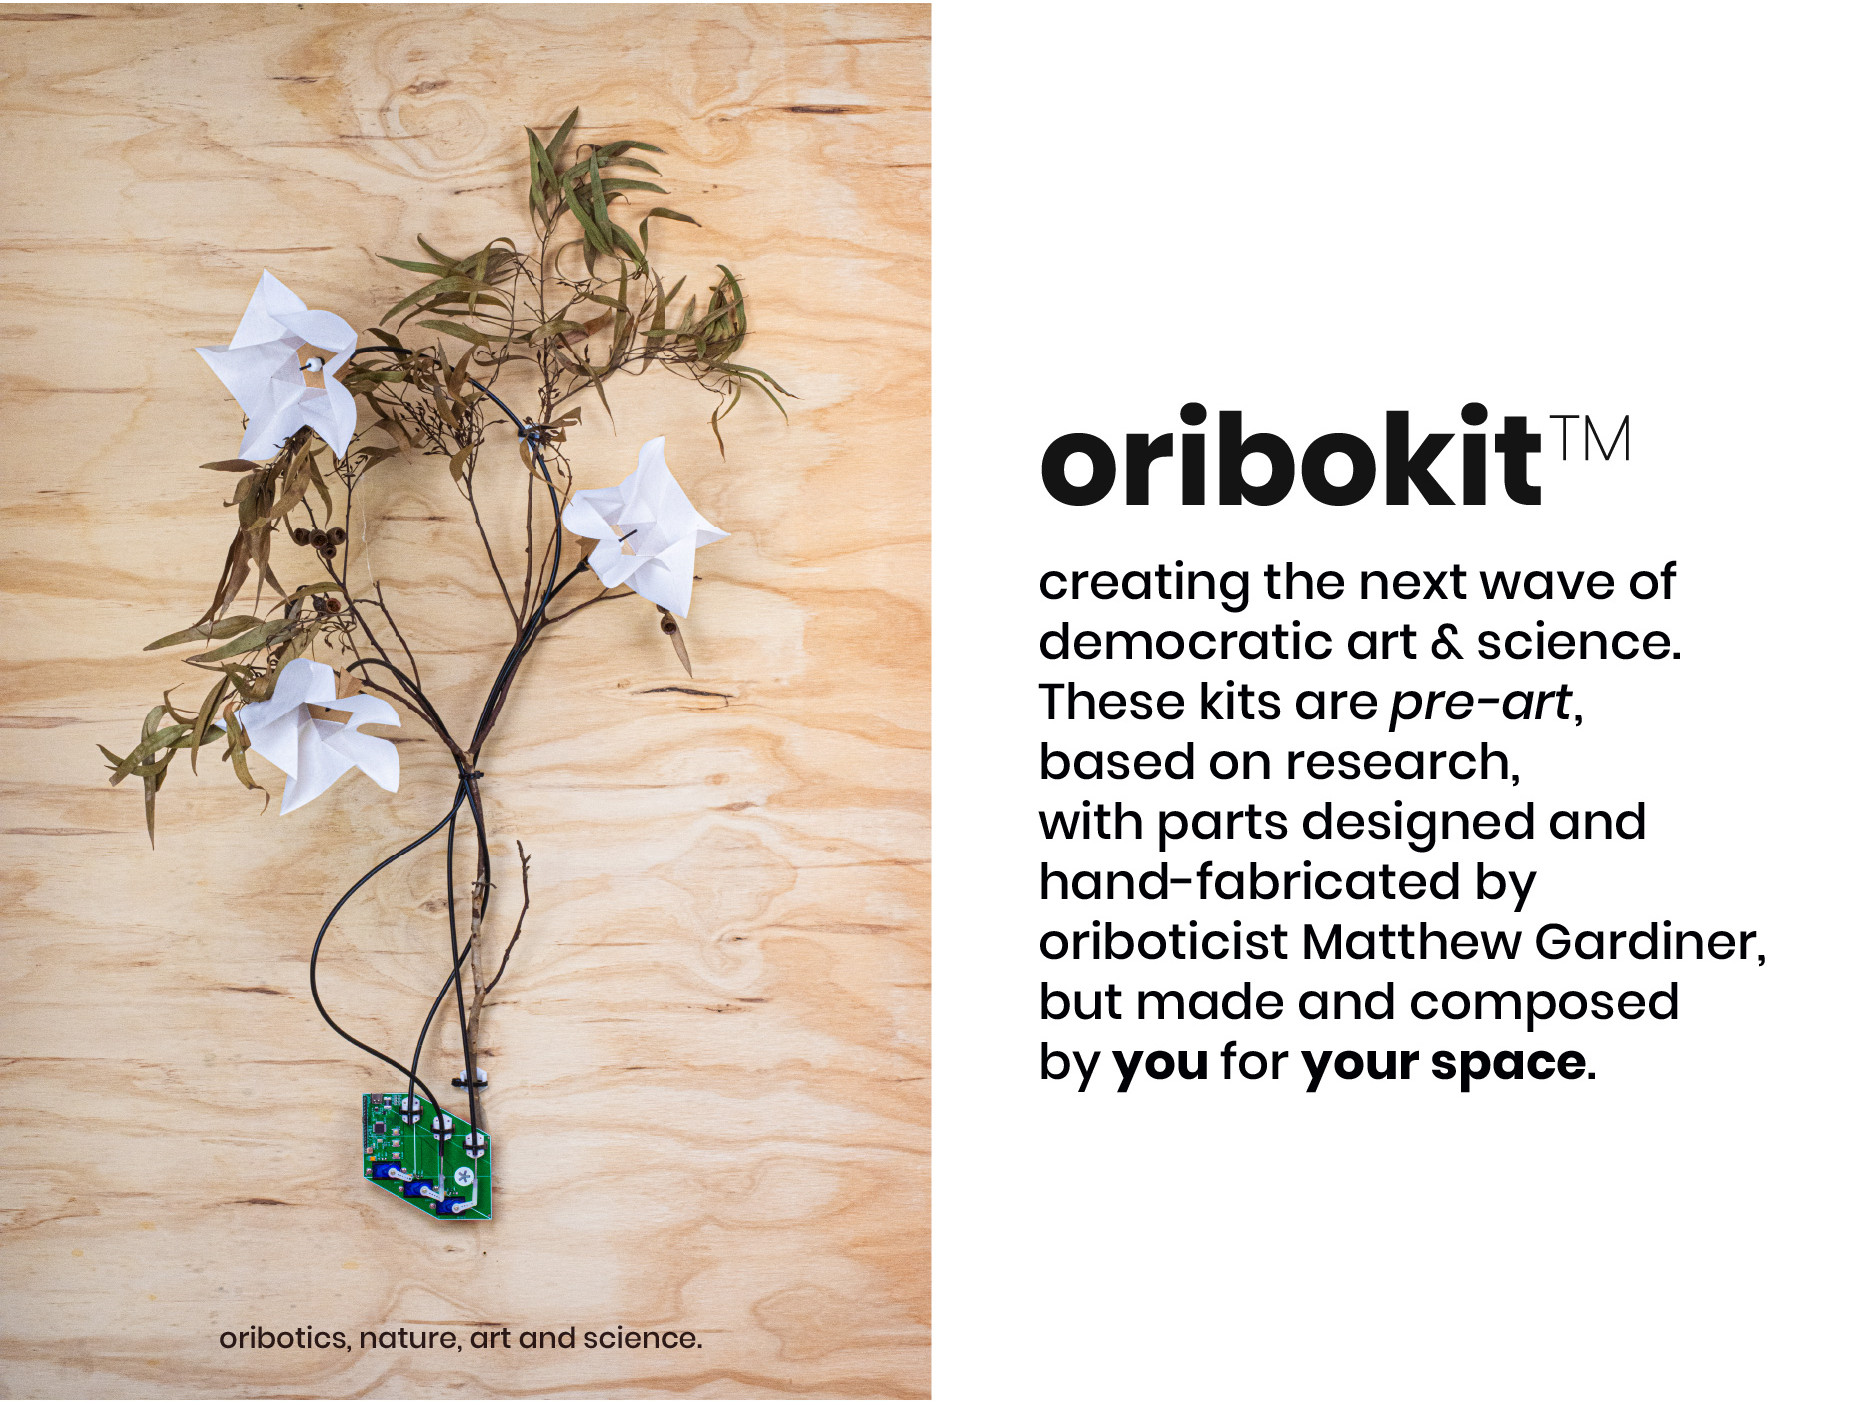 Oribokit Democratic Art-Science